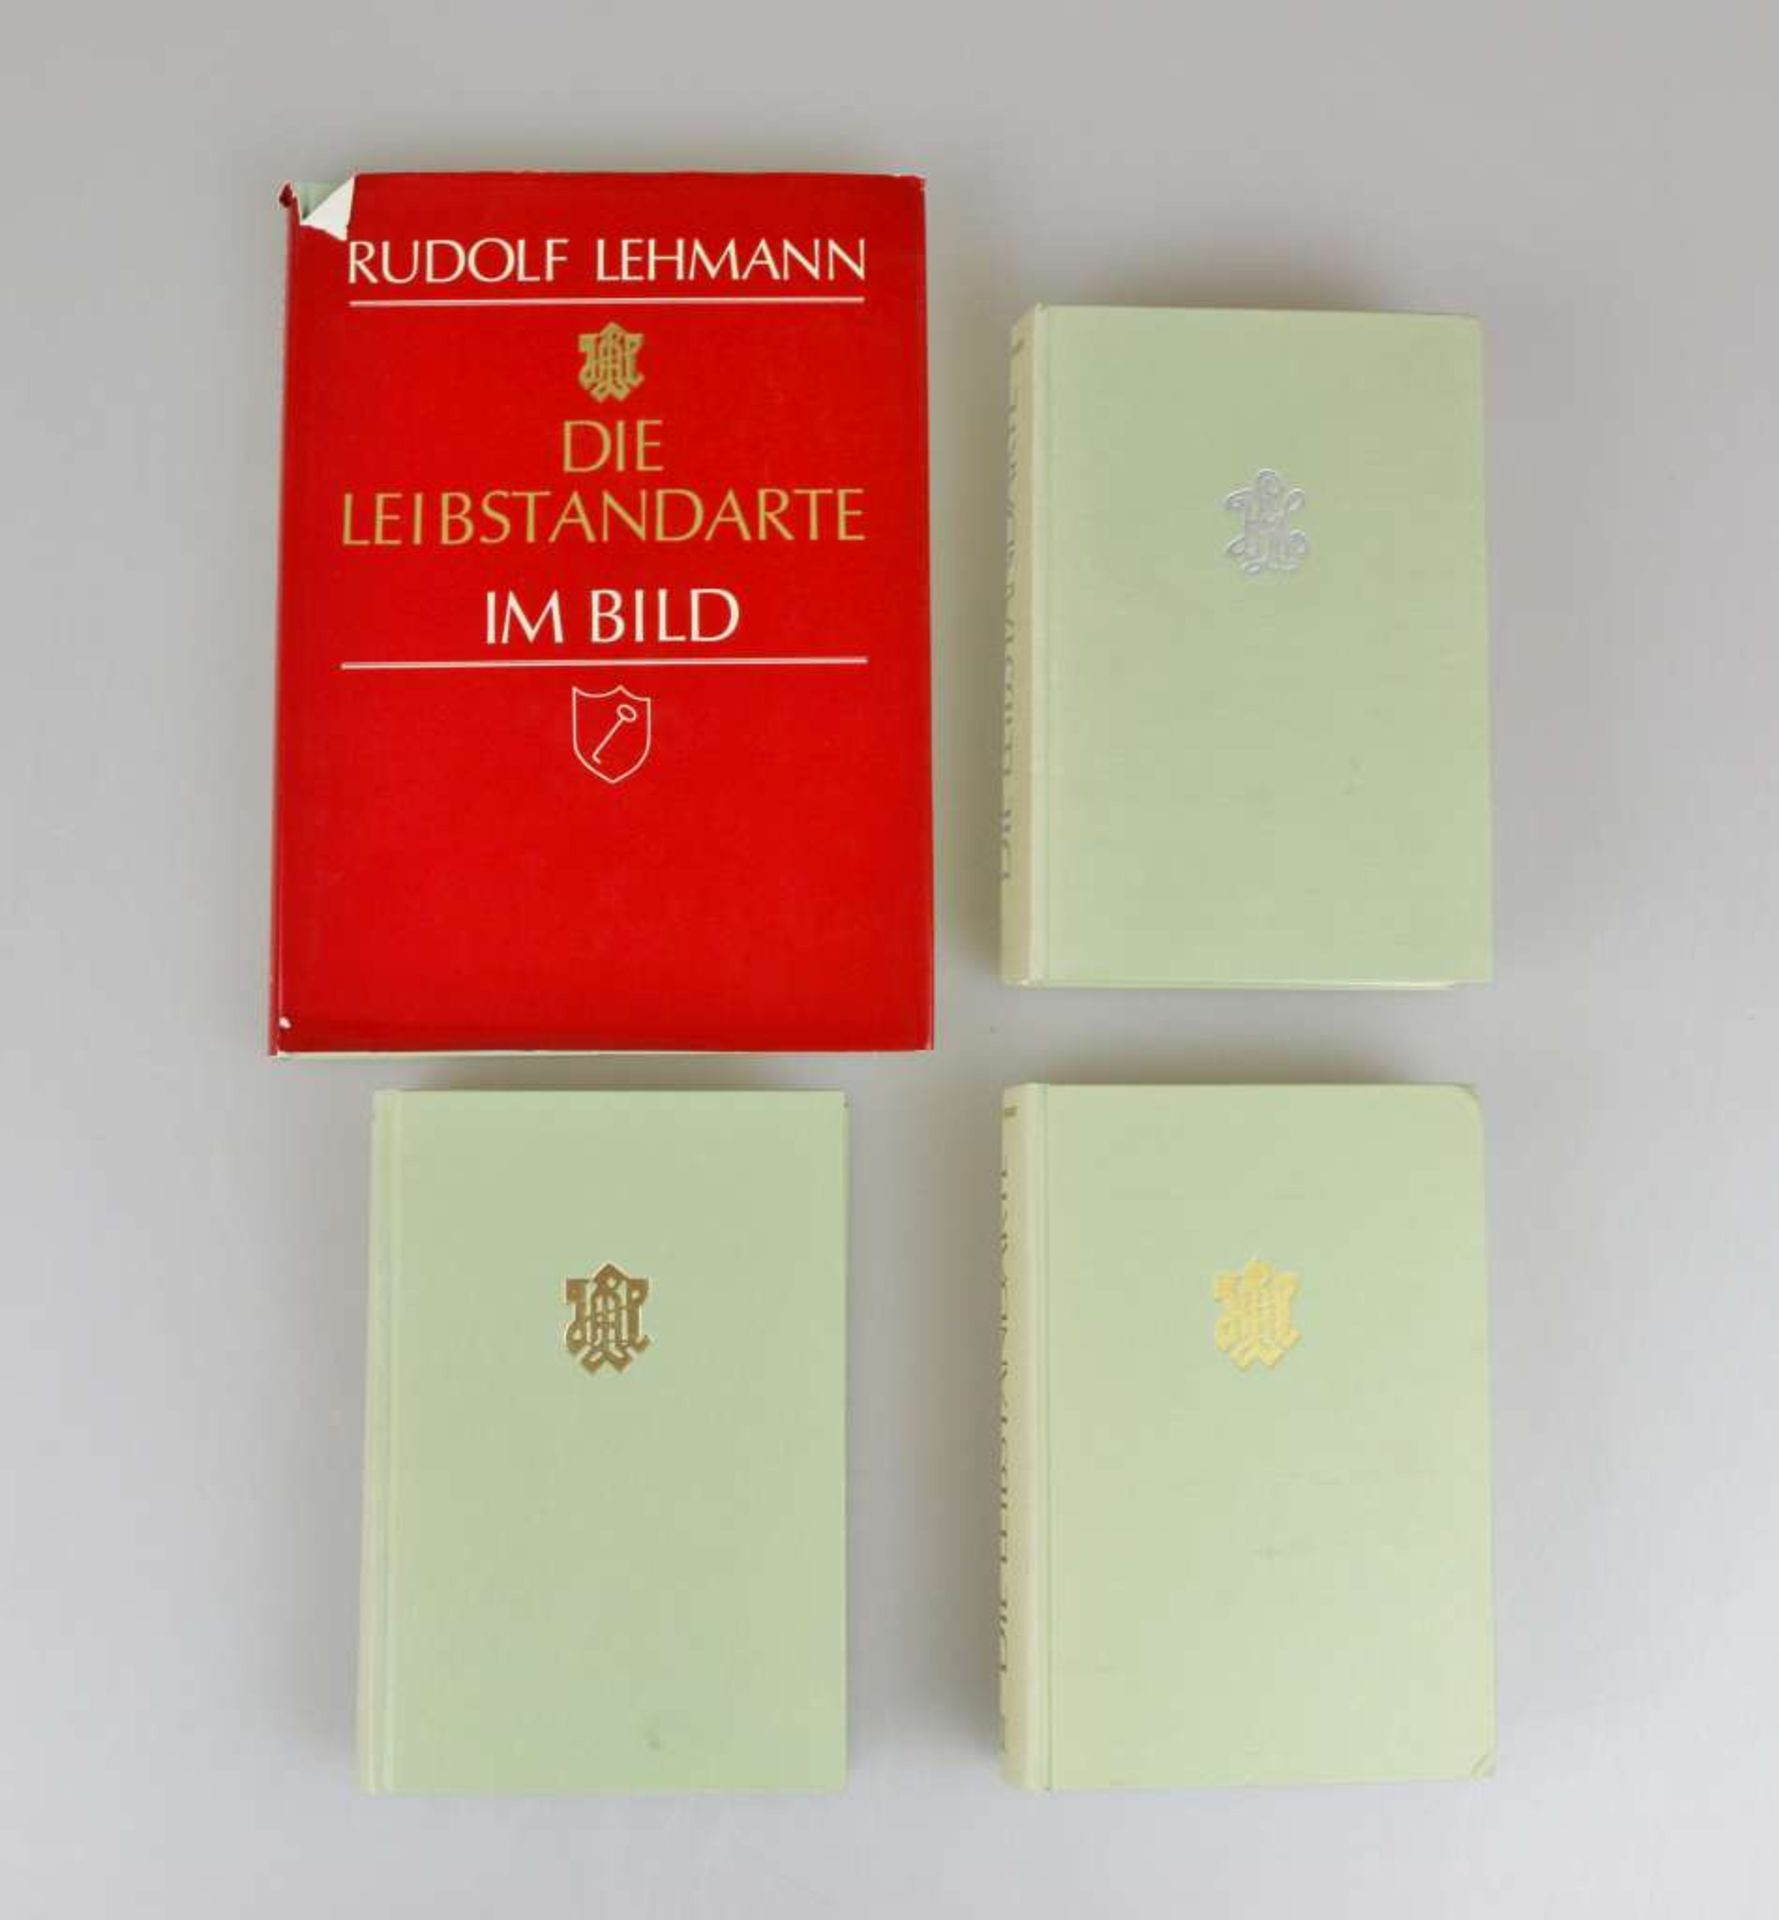 Rudolf Lehmann, "Die Leibstandarte", Bd. 1 - 3 und Band 5 Bildband, Munin Verlag GmbH, Osnabrück,